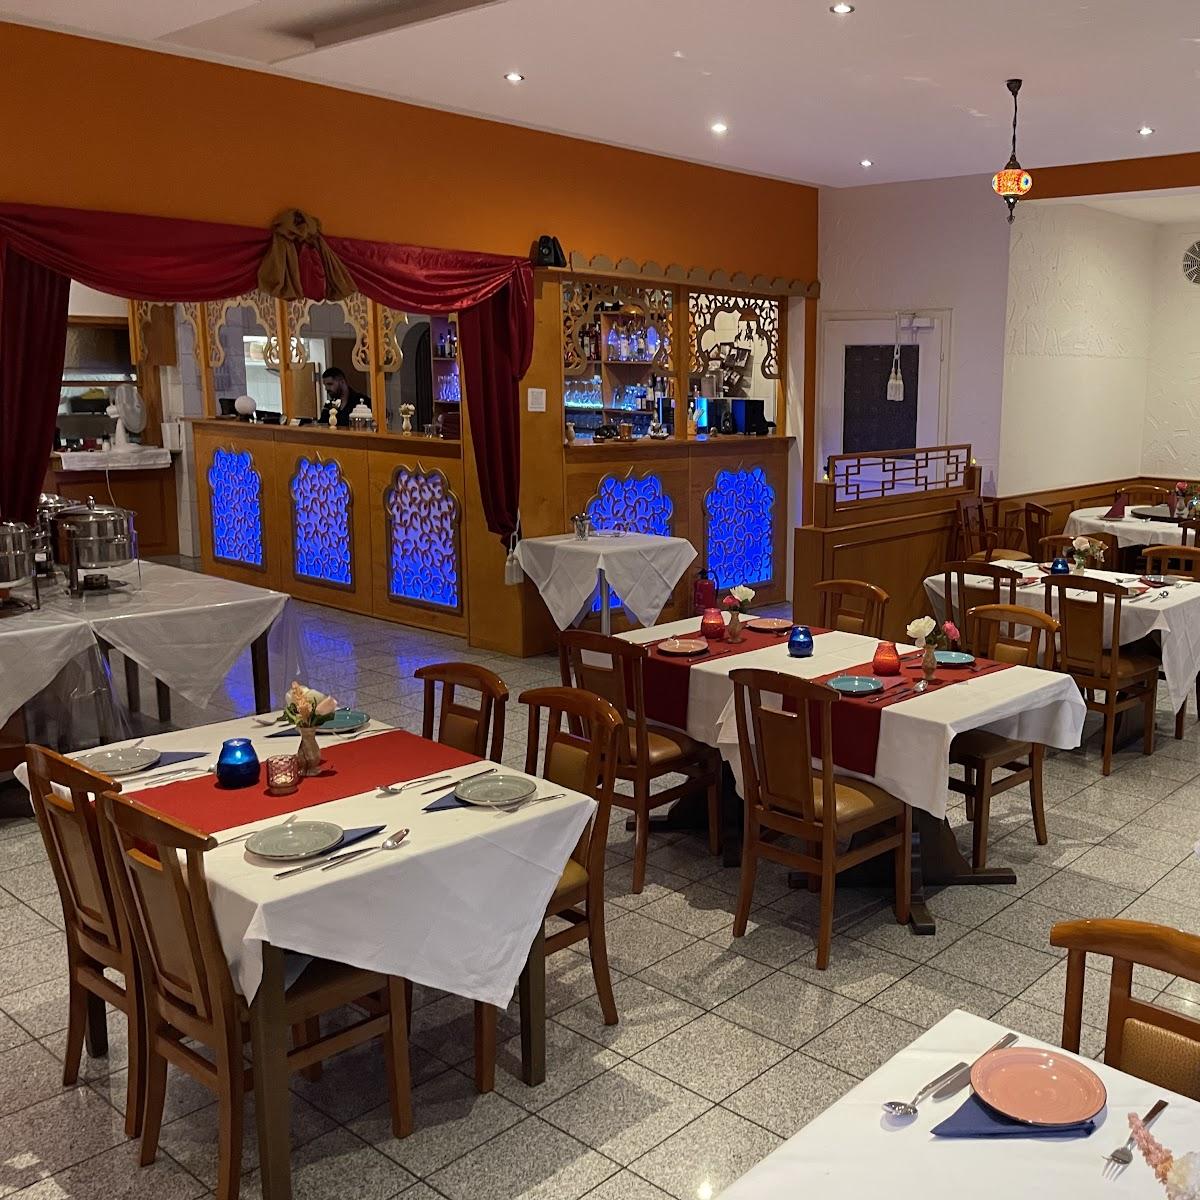 Restaurant "Himalaya Indisches Restaurant" in Moosburg an der Isar